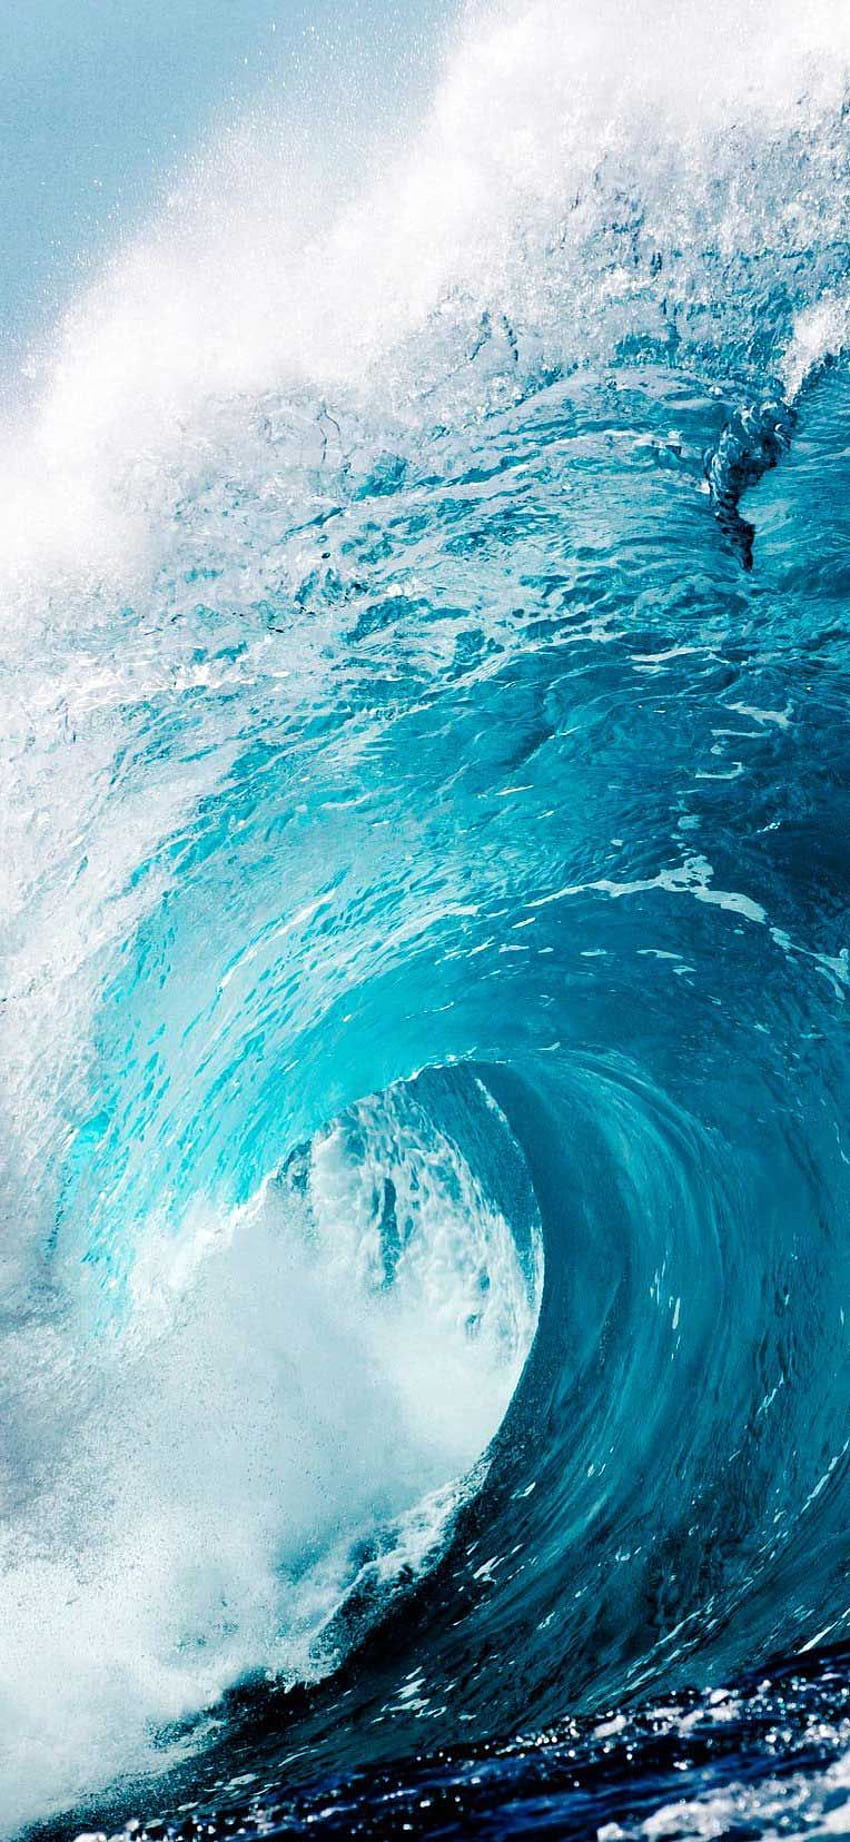 iPhone X Waves ocean stock . Ocean , Waves iphone, iphone summer, Surf Waves HD phone wallpaper